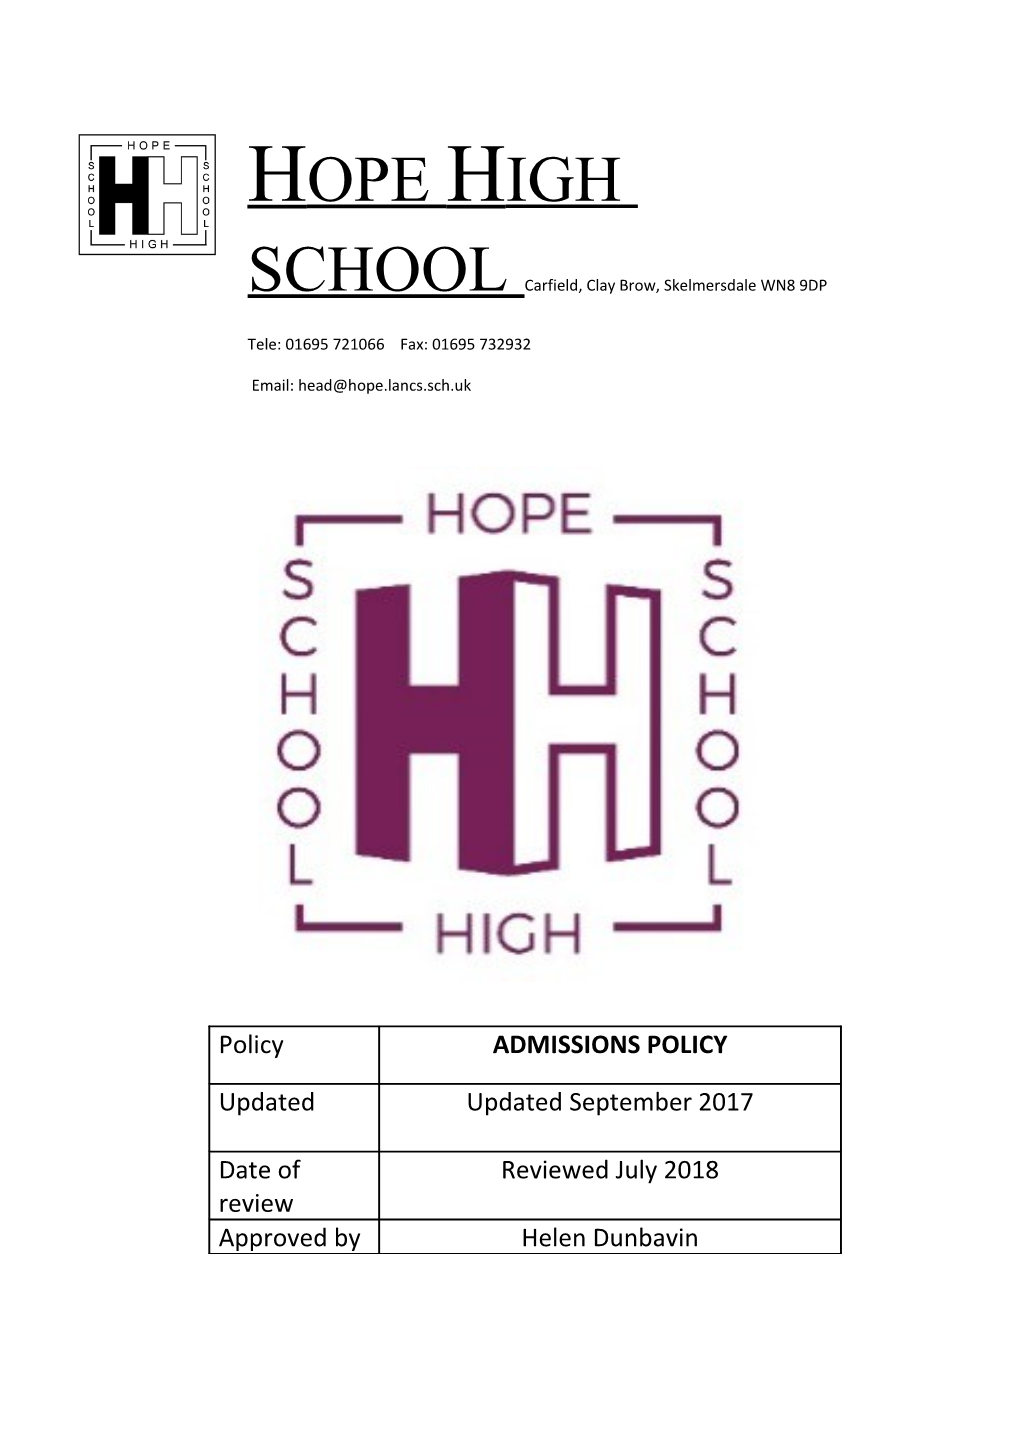 HOPE HIGH Schoolcarfield, Clay Brow, Skelmersdale WN8 9DP